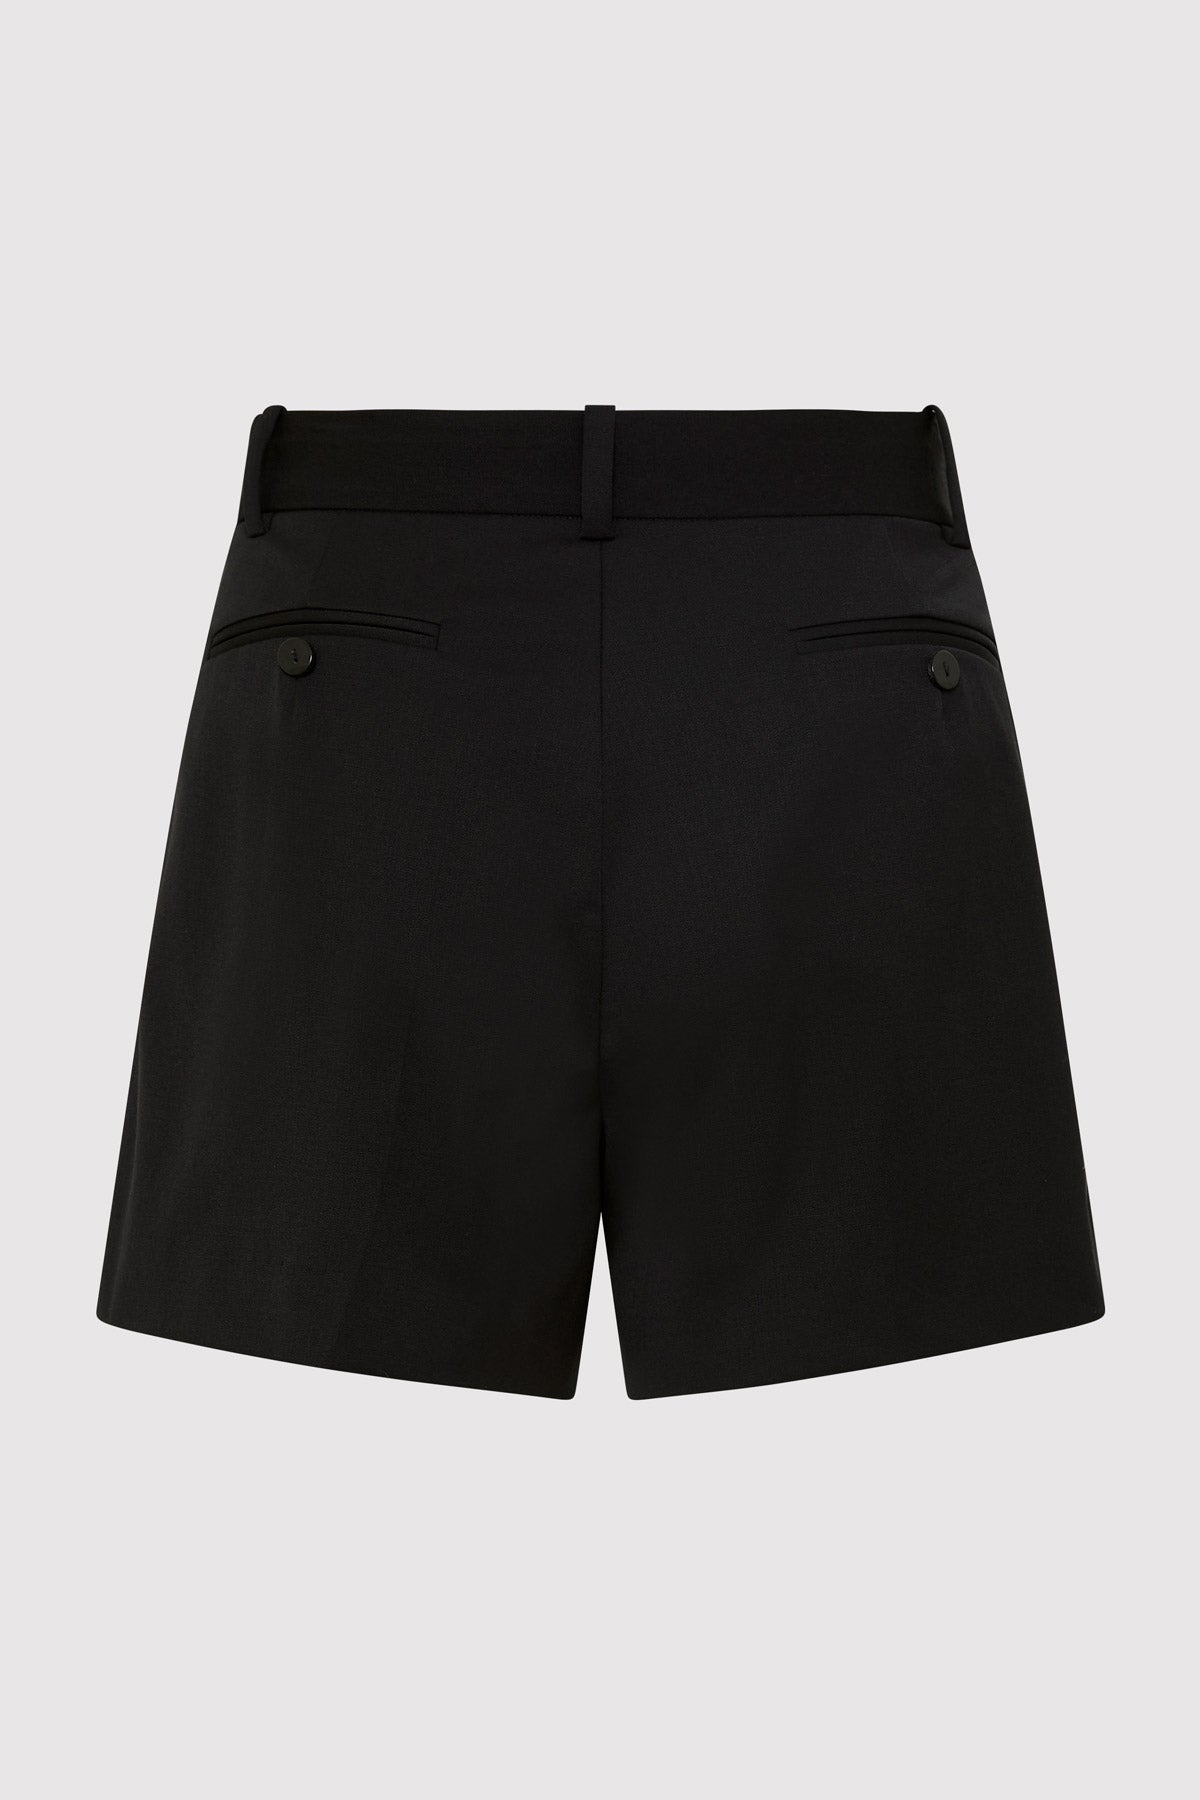 St. Agni | Tailored Shorts - Black